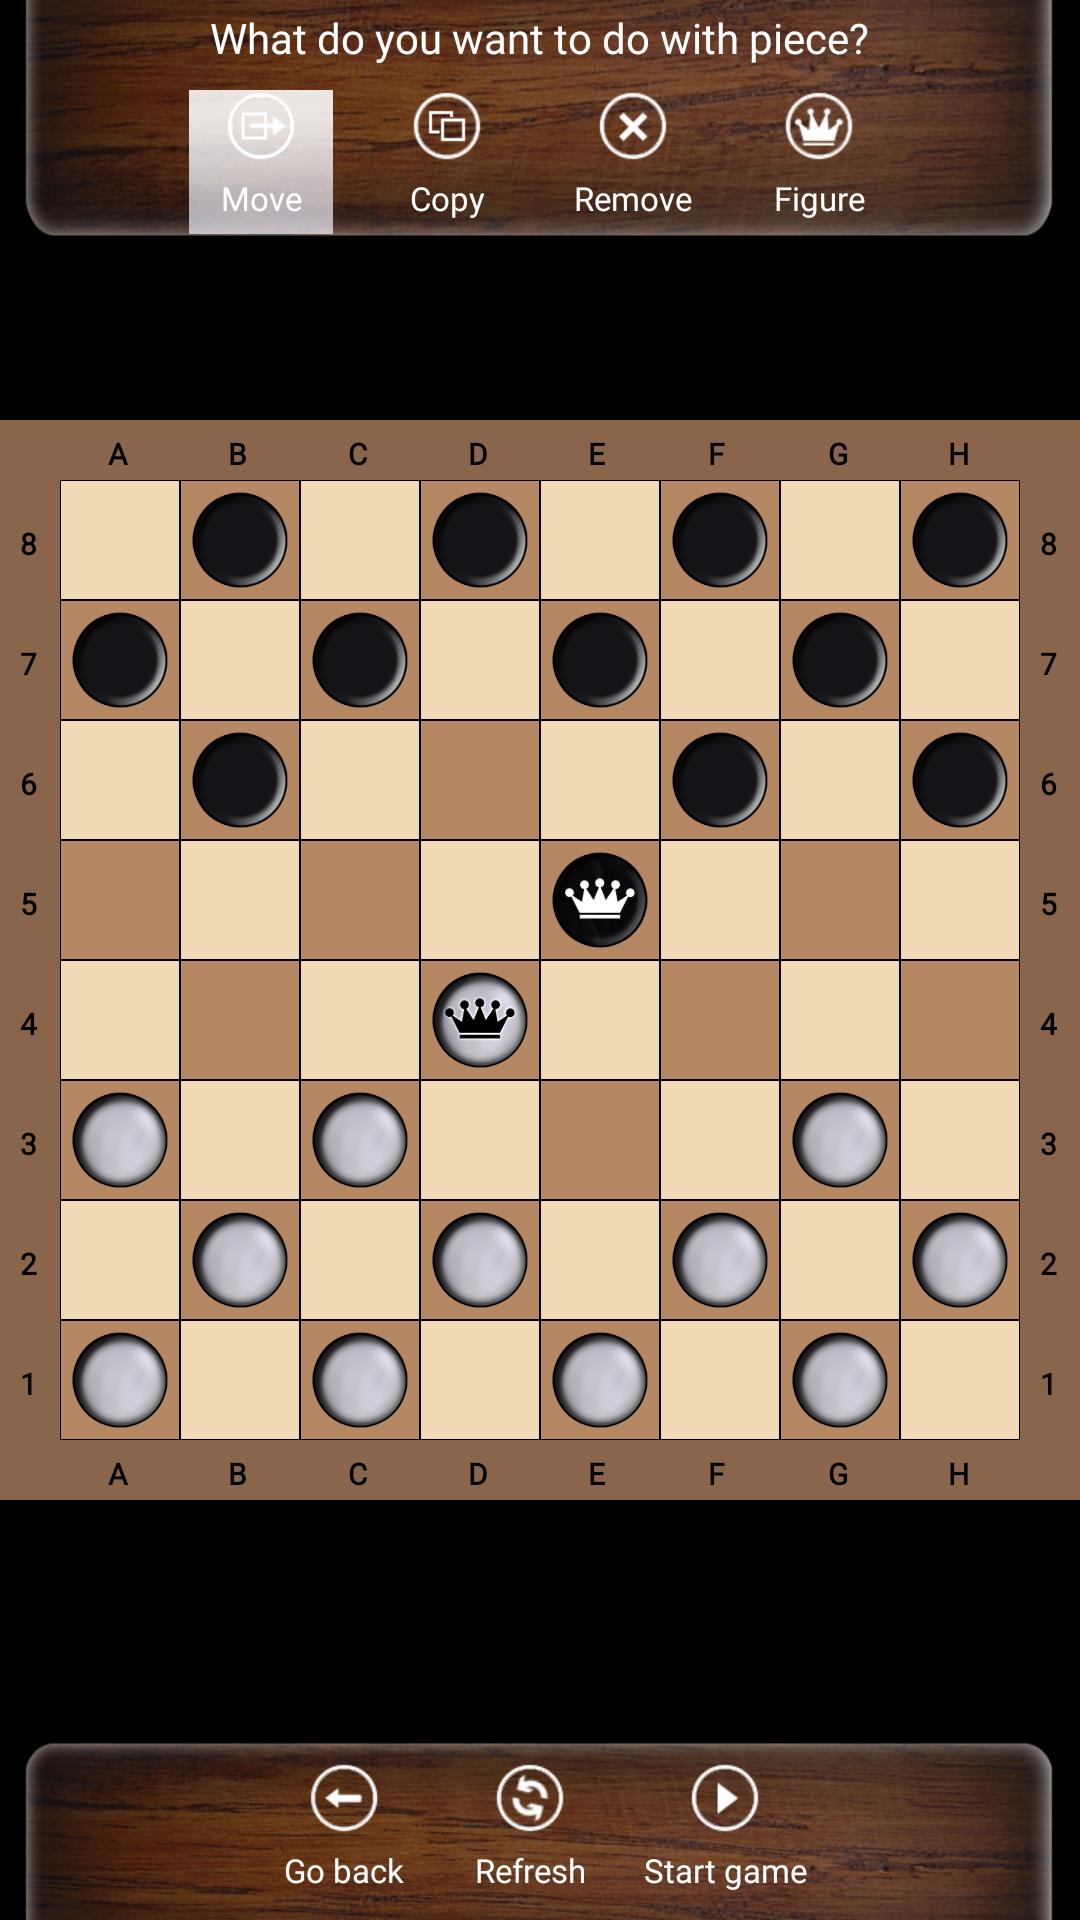 Играть игру шашки на двоих